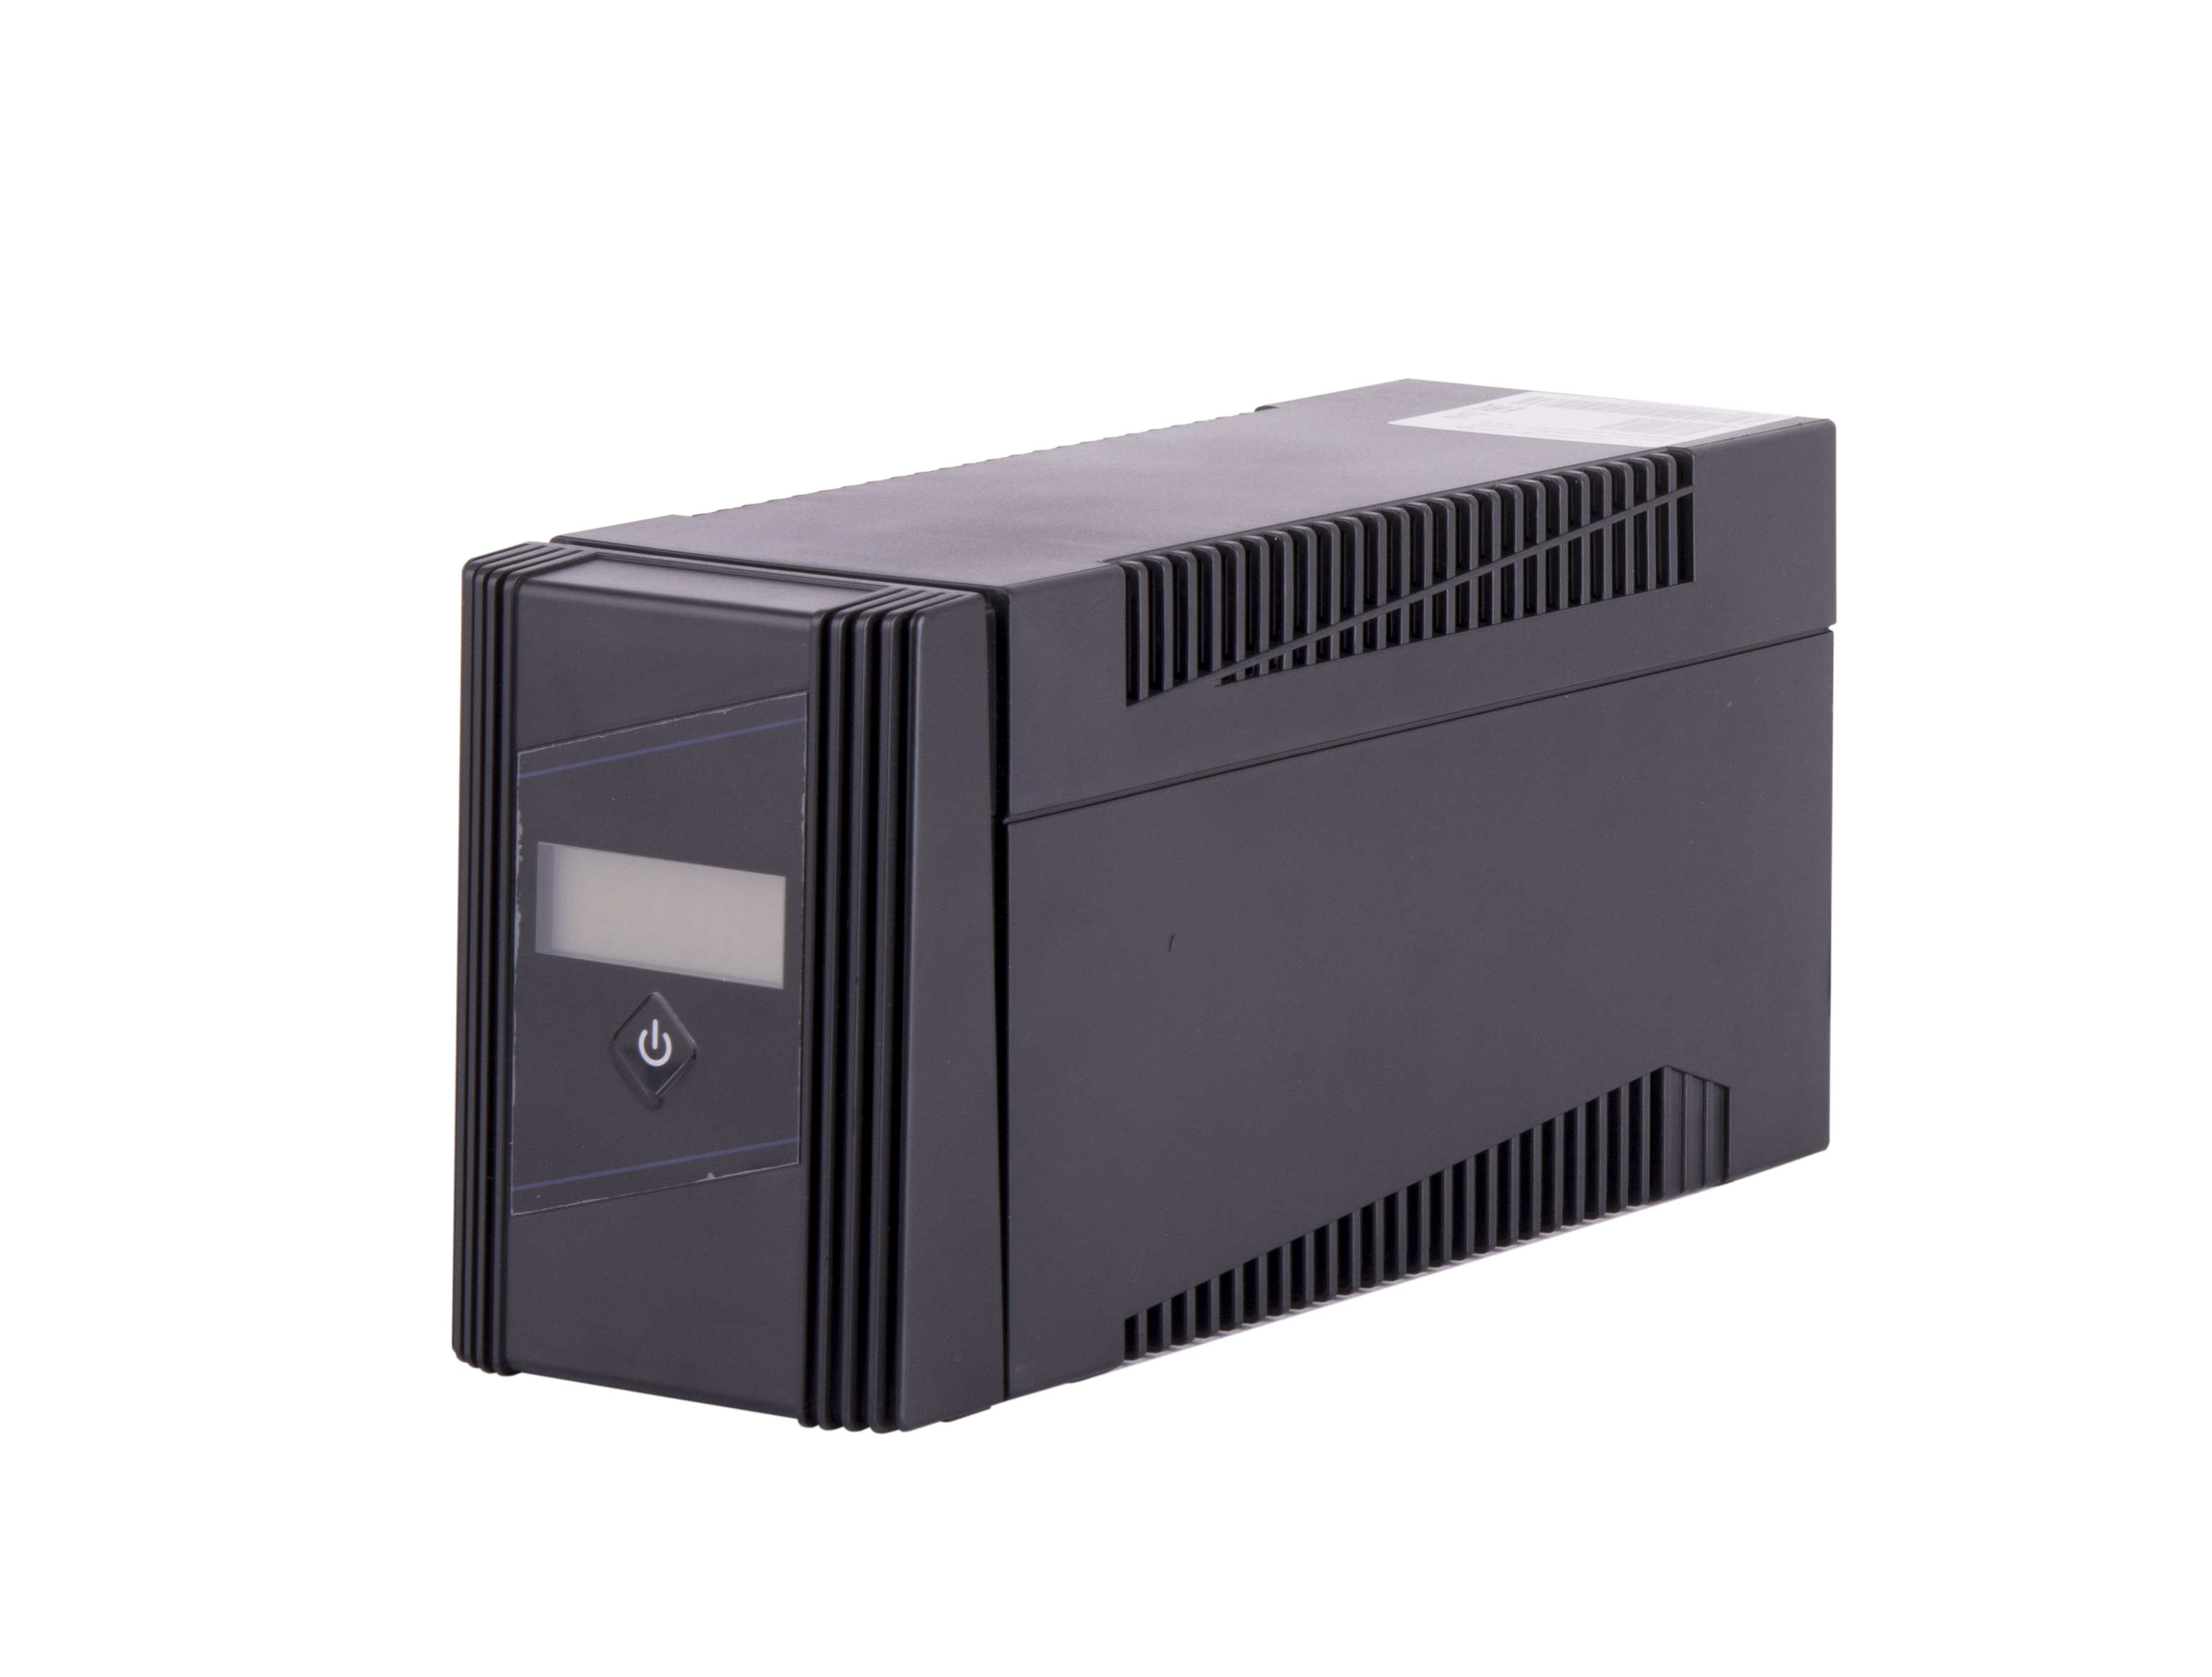 ИБП GIGALINK GL-UPS-LI85-1-1/1*9a, 850VA, 500W, EURO+IEC, розеток - 2, USB, черный